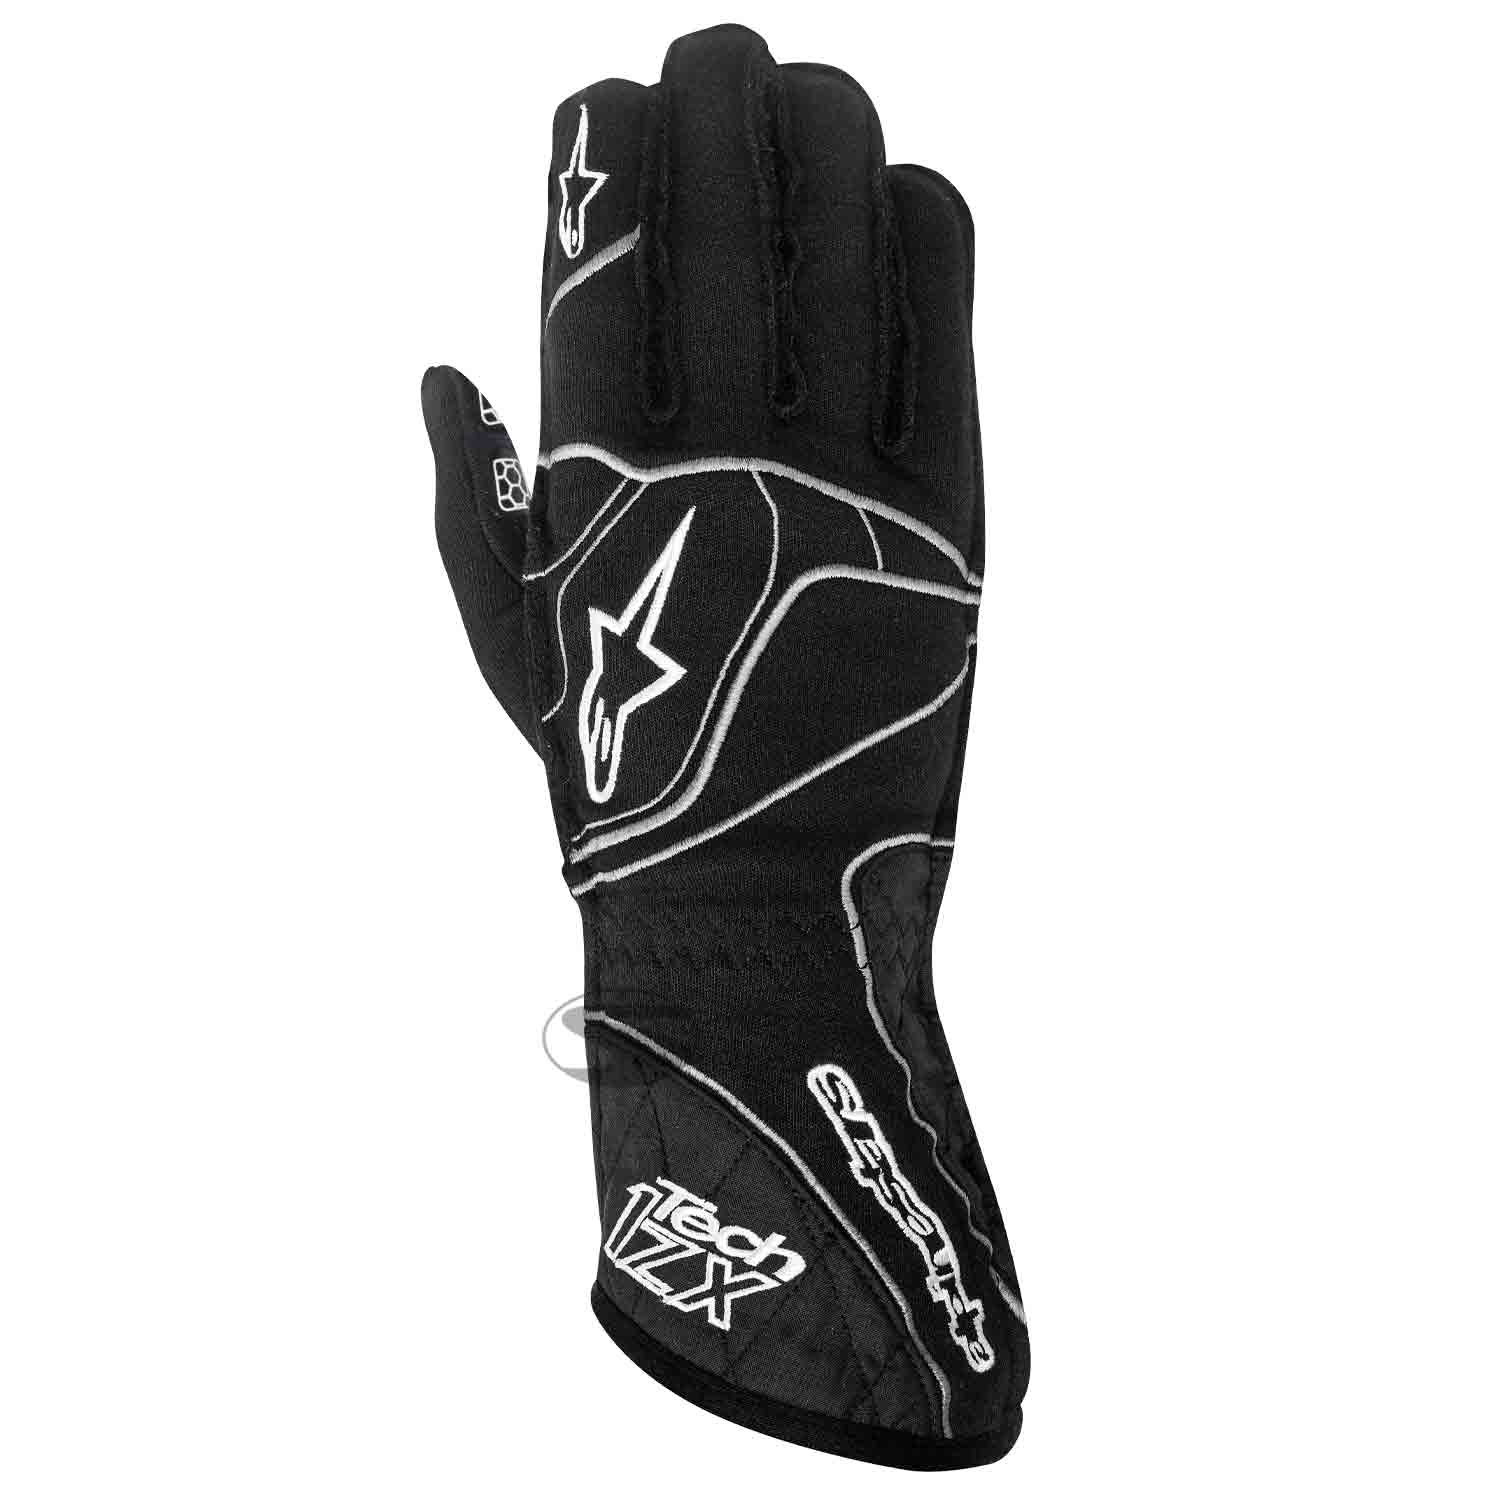 Alpinestars Handschuh Tech 1ZX, schwarz/weiß